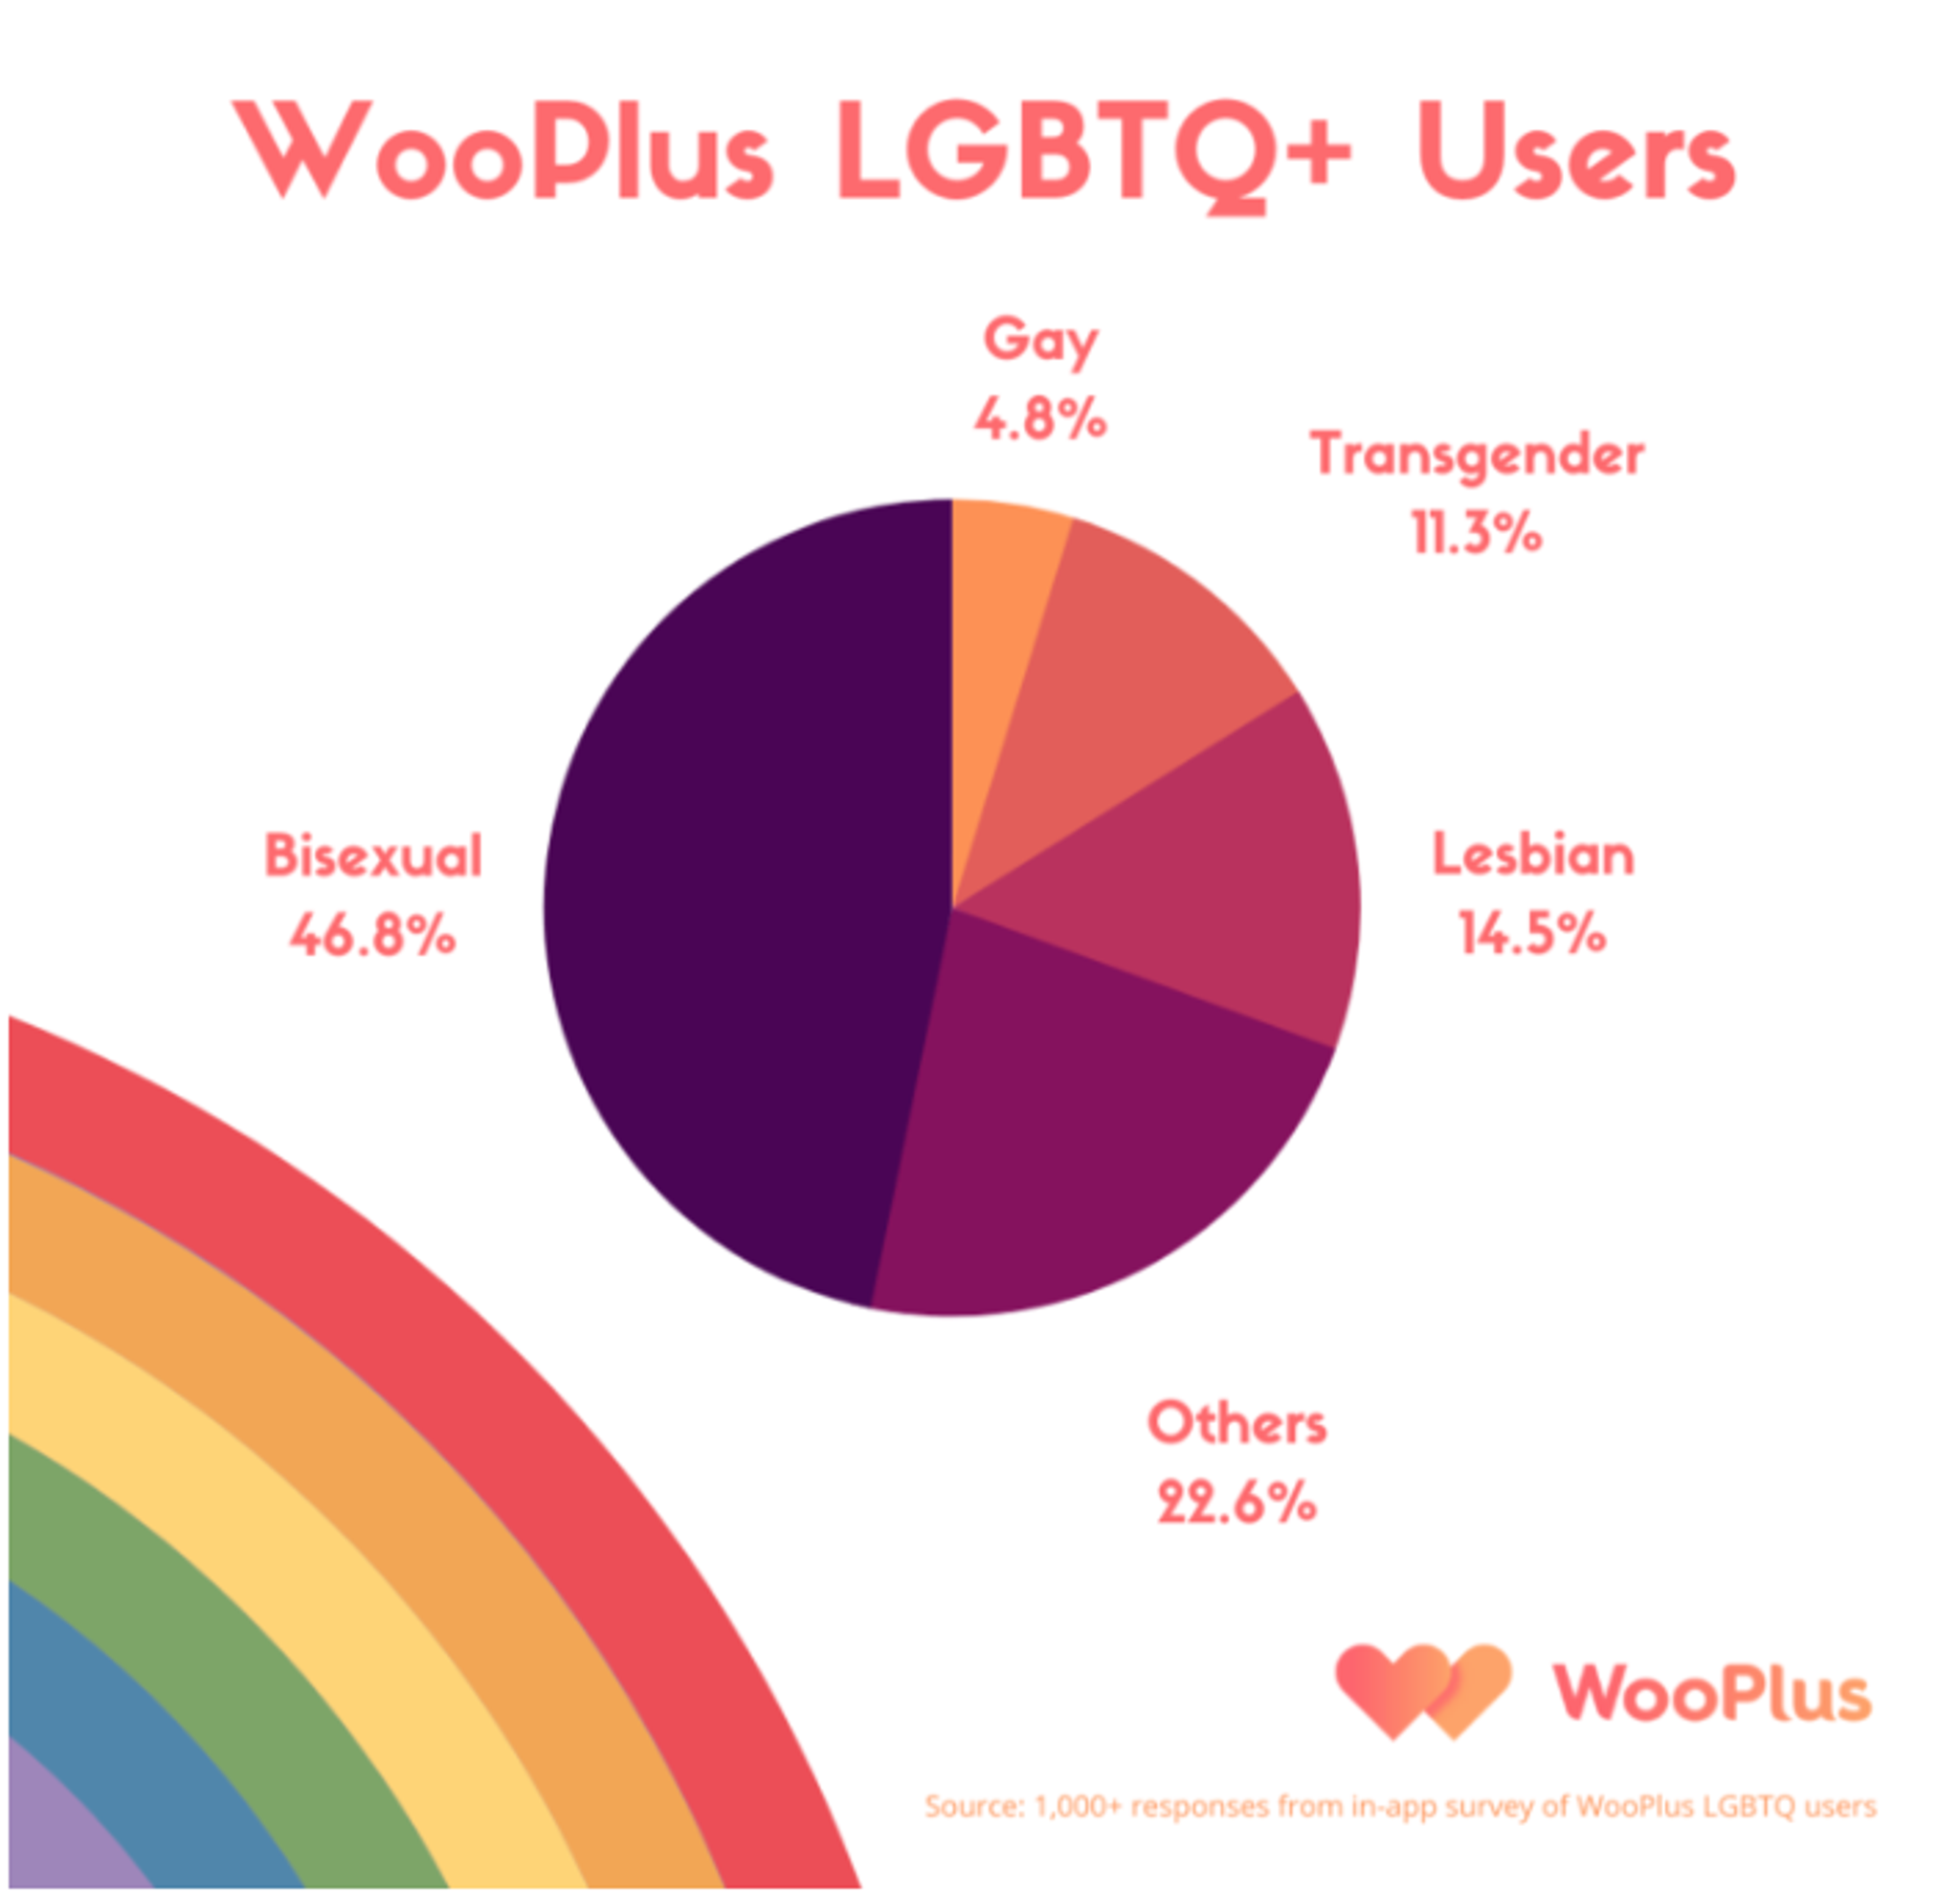 WooPlus LGBTQ+ Users